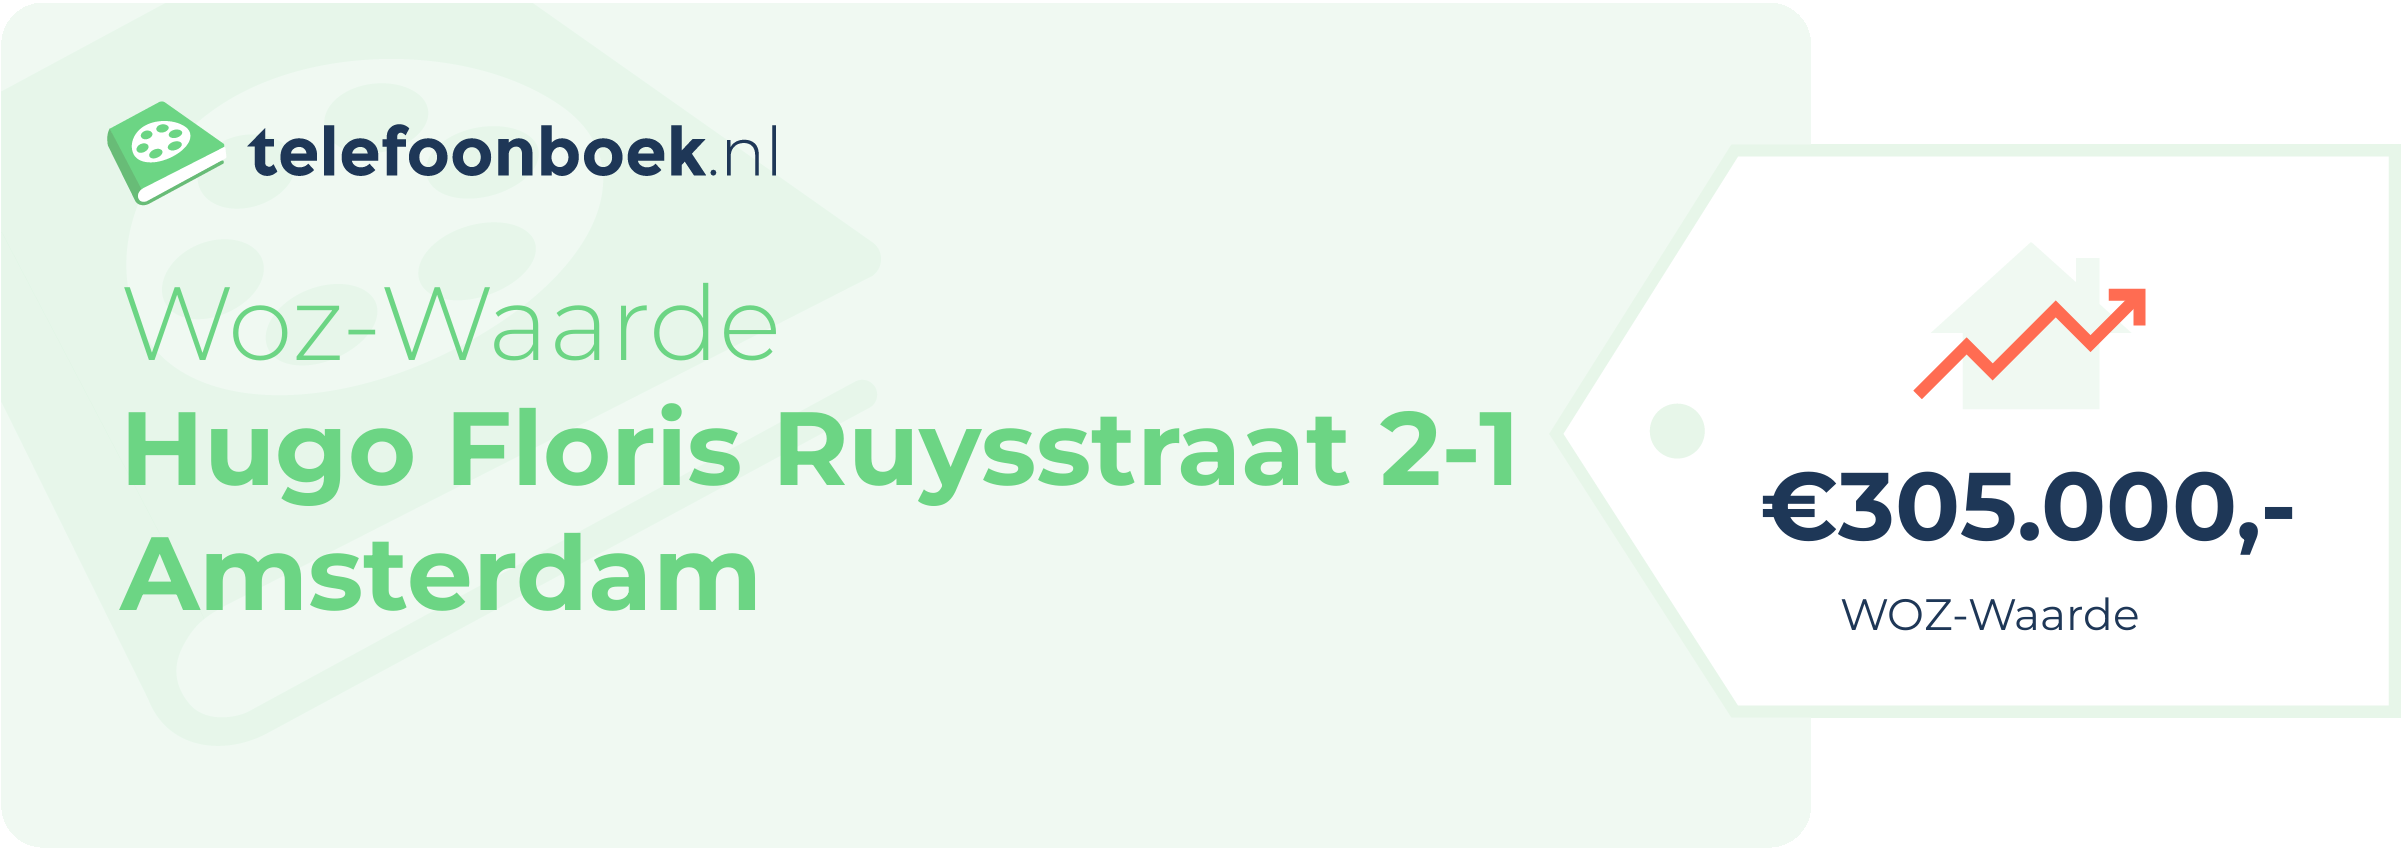 WOZ-waarde Hugo Floris Ruysstraat 2-1 Amsterdam